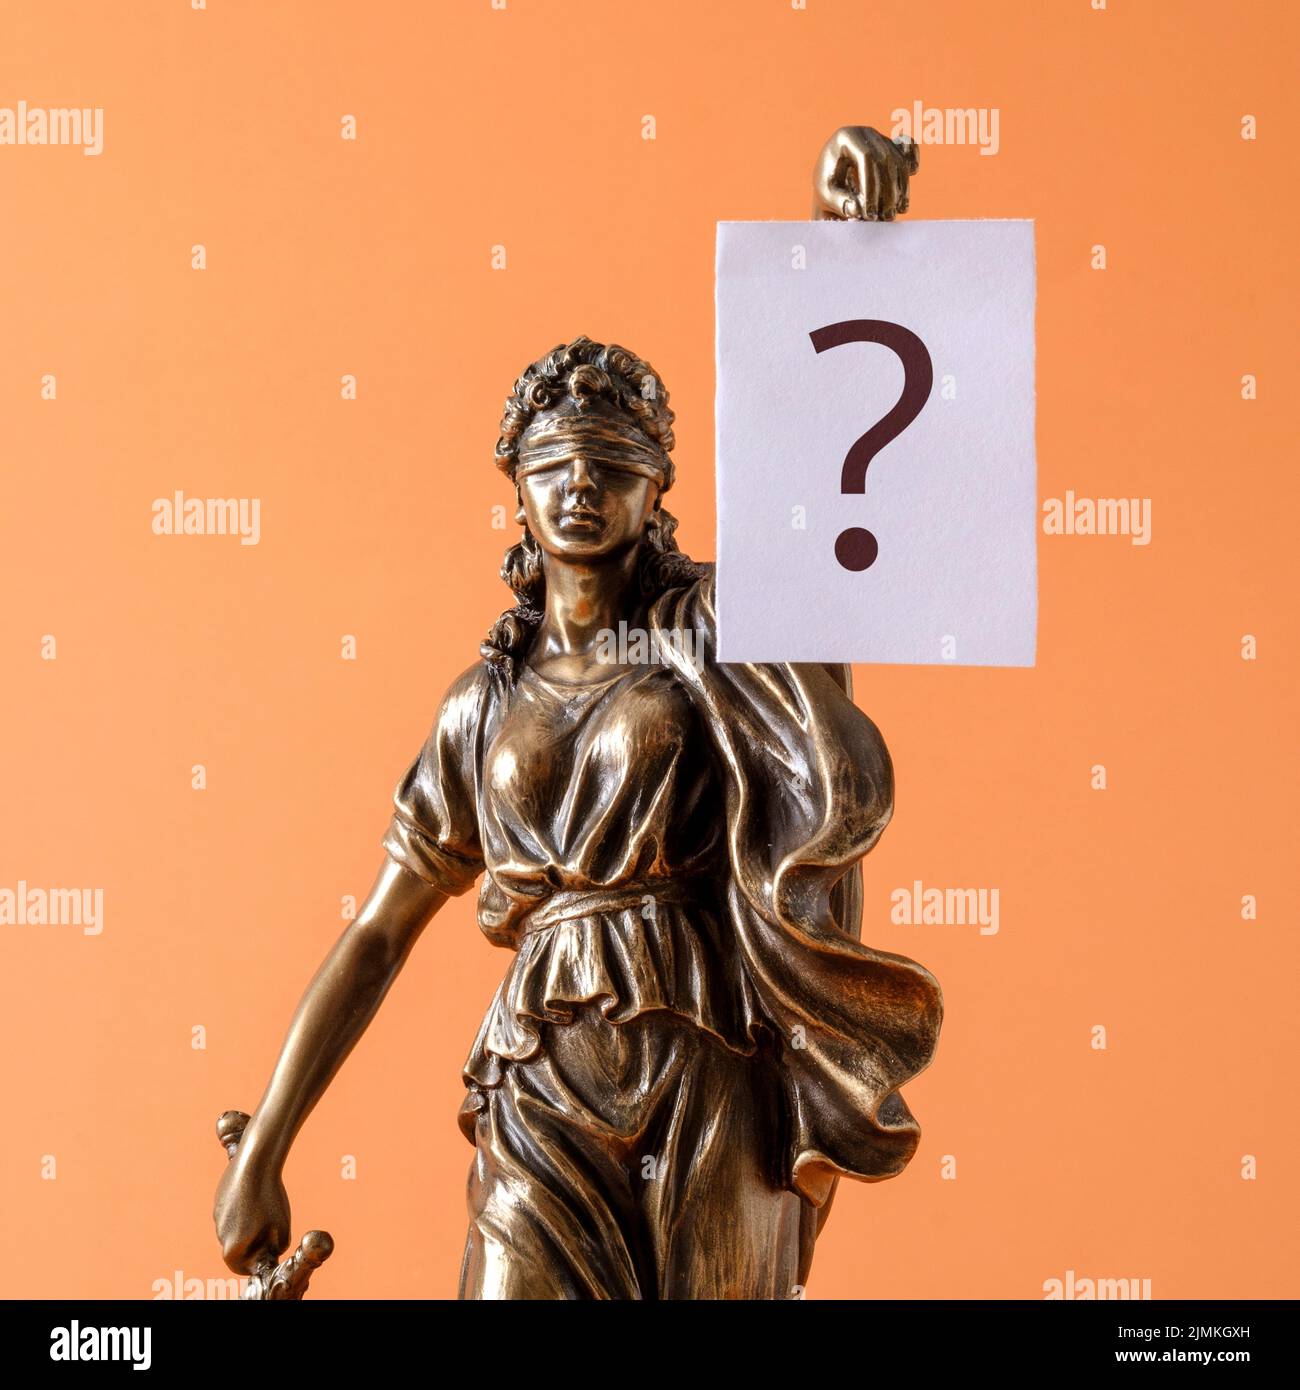 Statue de justice Themis est un symbole de droit et de liberté et une bannière en papier blanche avec un point d'interrogation. Concept créatif minimal. Banque D'Images